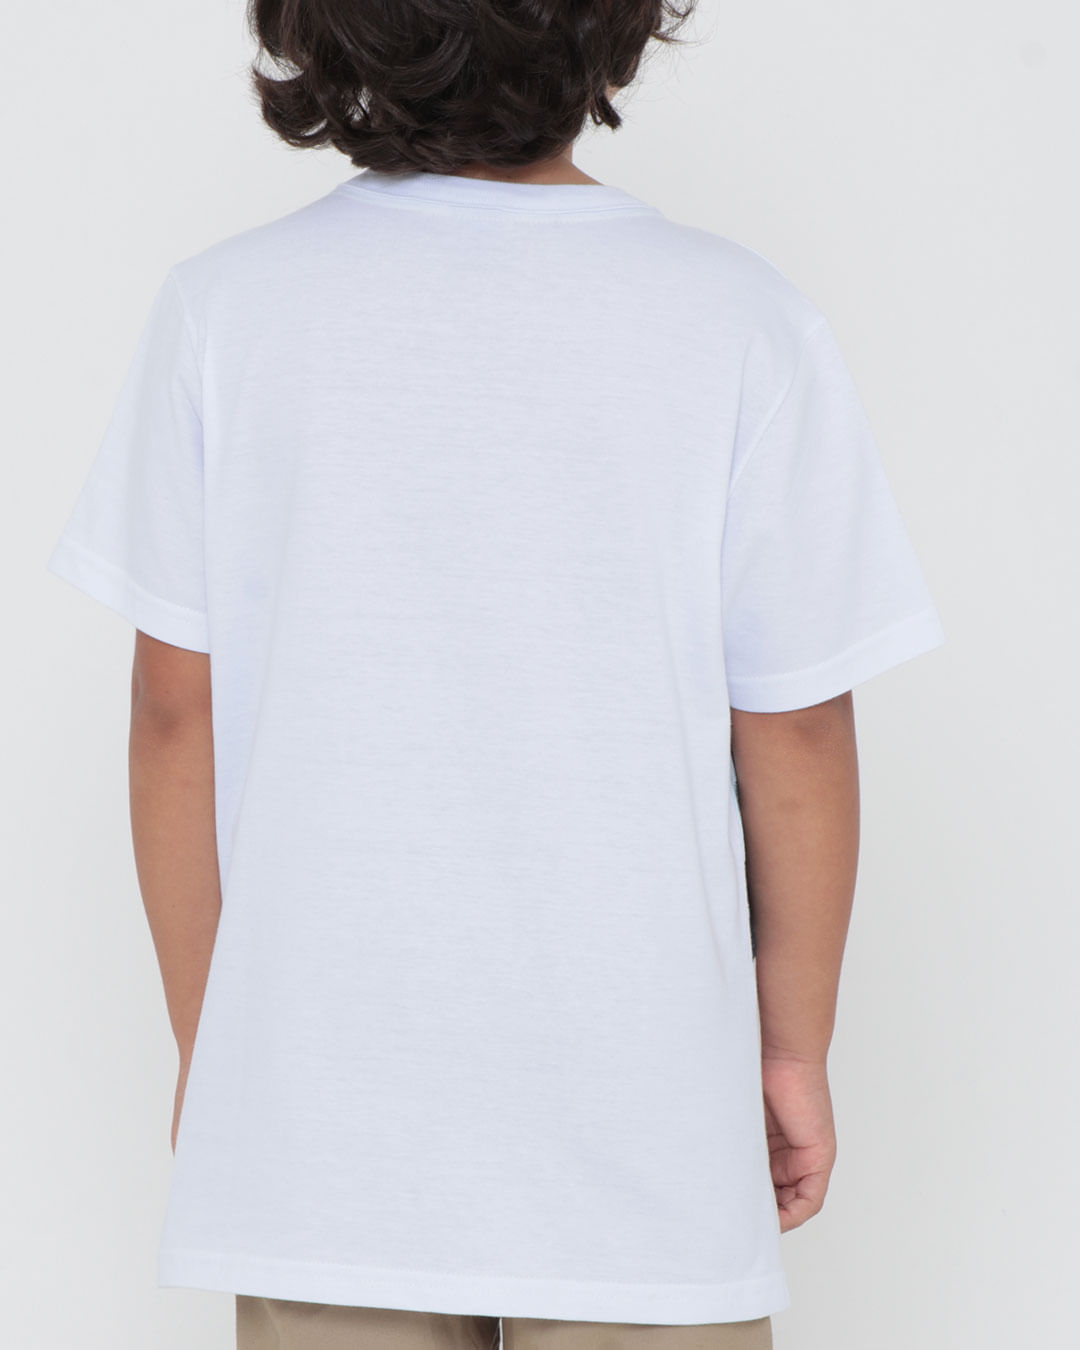 Camiseta-301329-Mc-M410-Trop---Branco